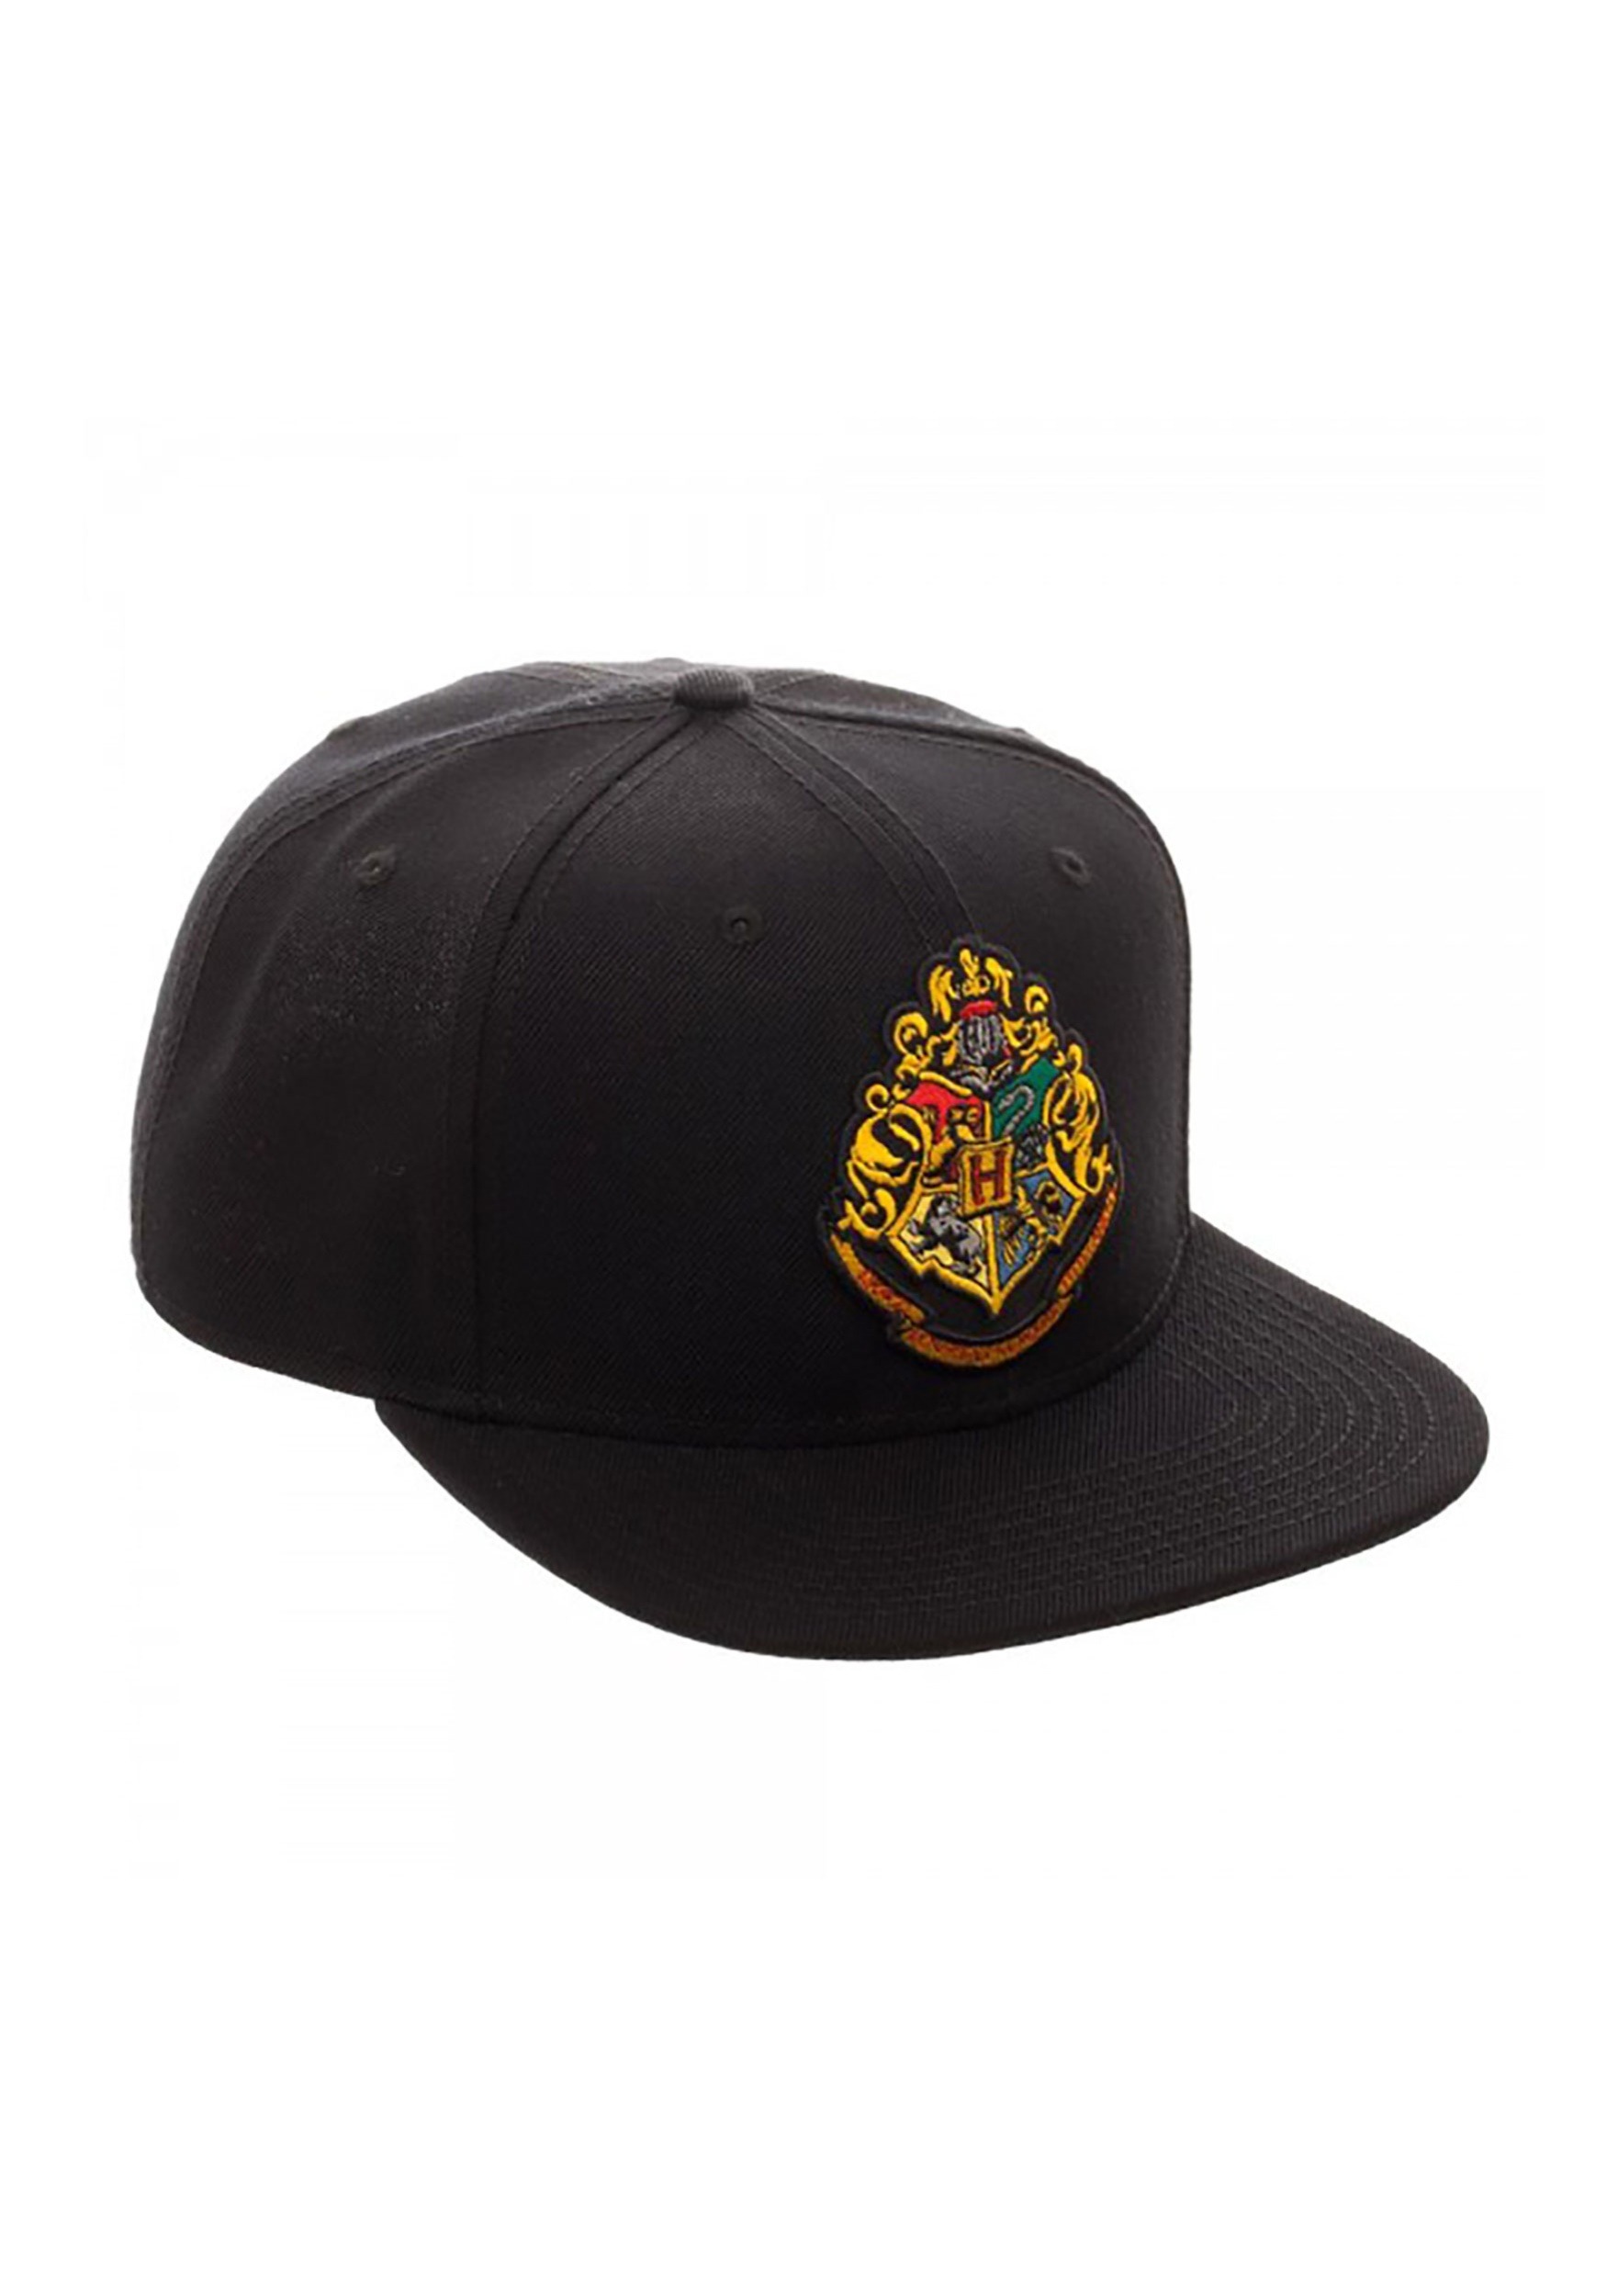 Harry Potter Hogwarts Crest Snap Back Hat